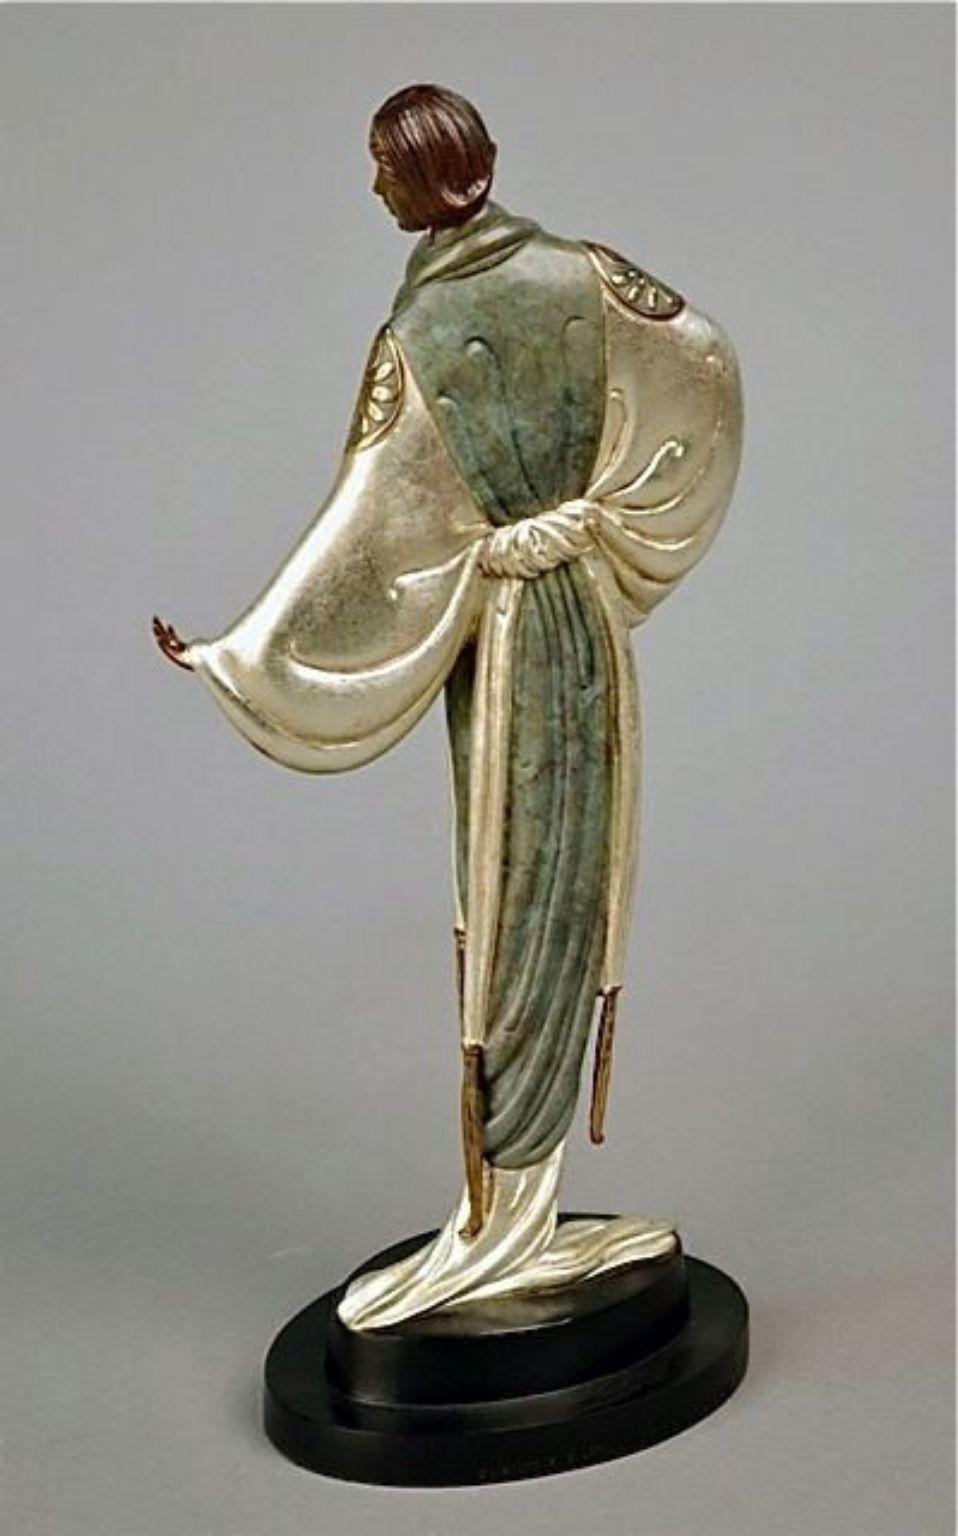 Belle de Nuit (Bronze), Limited Edition, Erte - MINT CONDITION - Sculpture by Erté